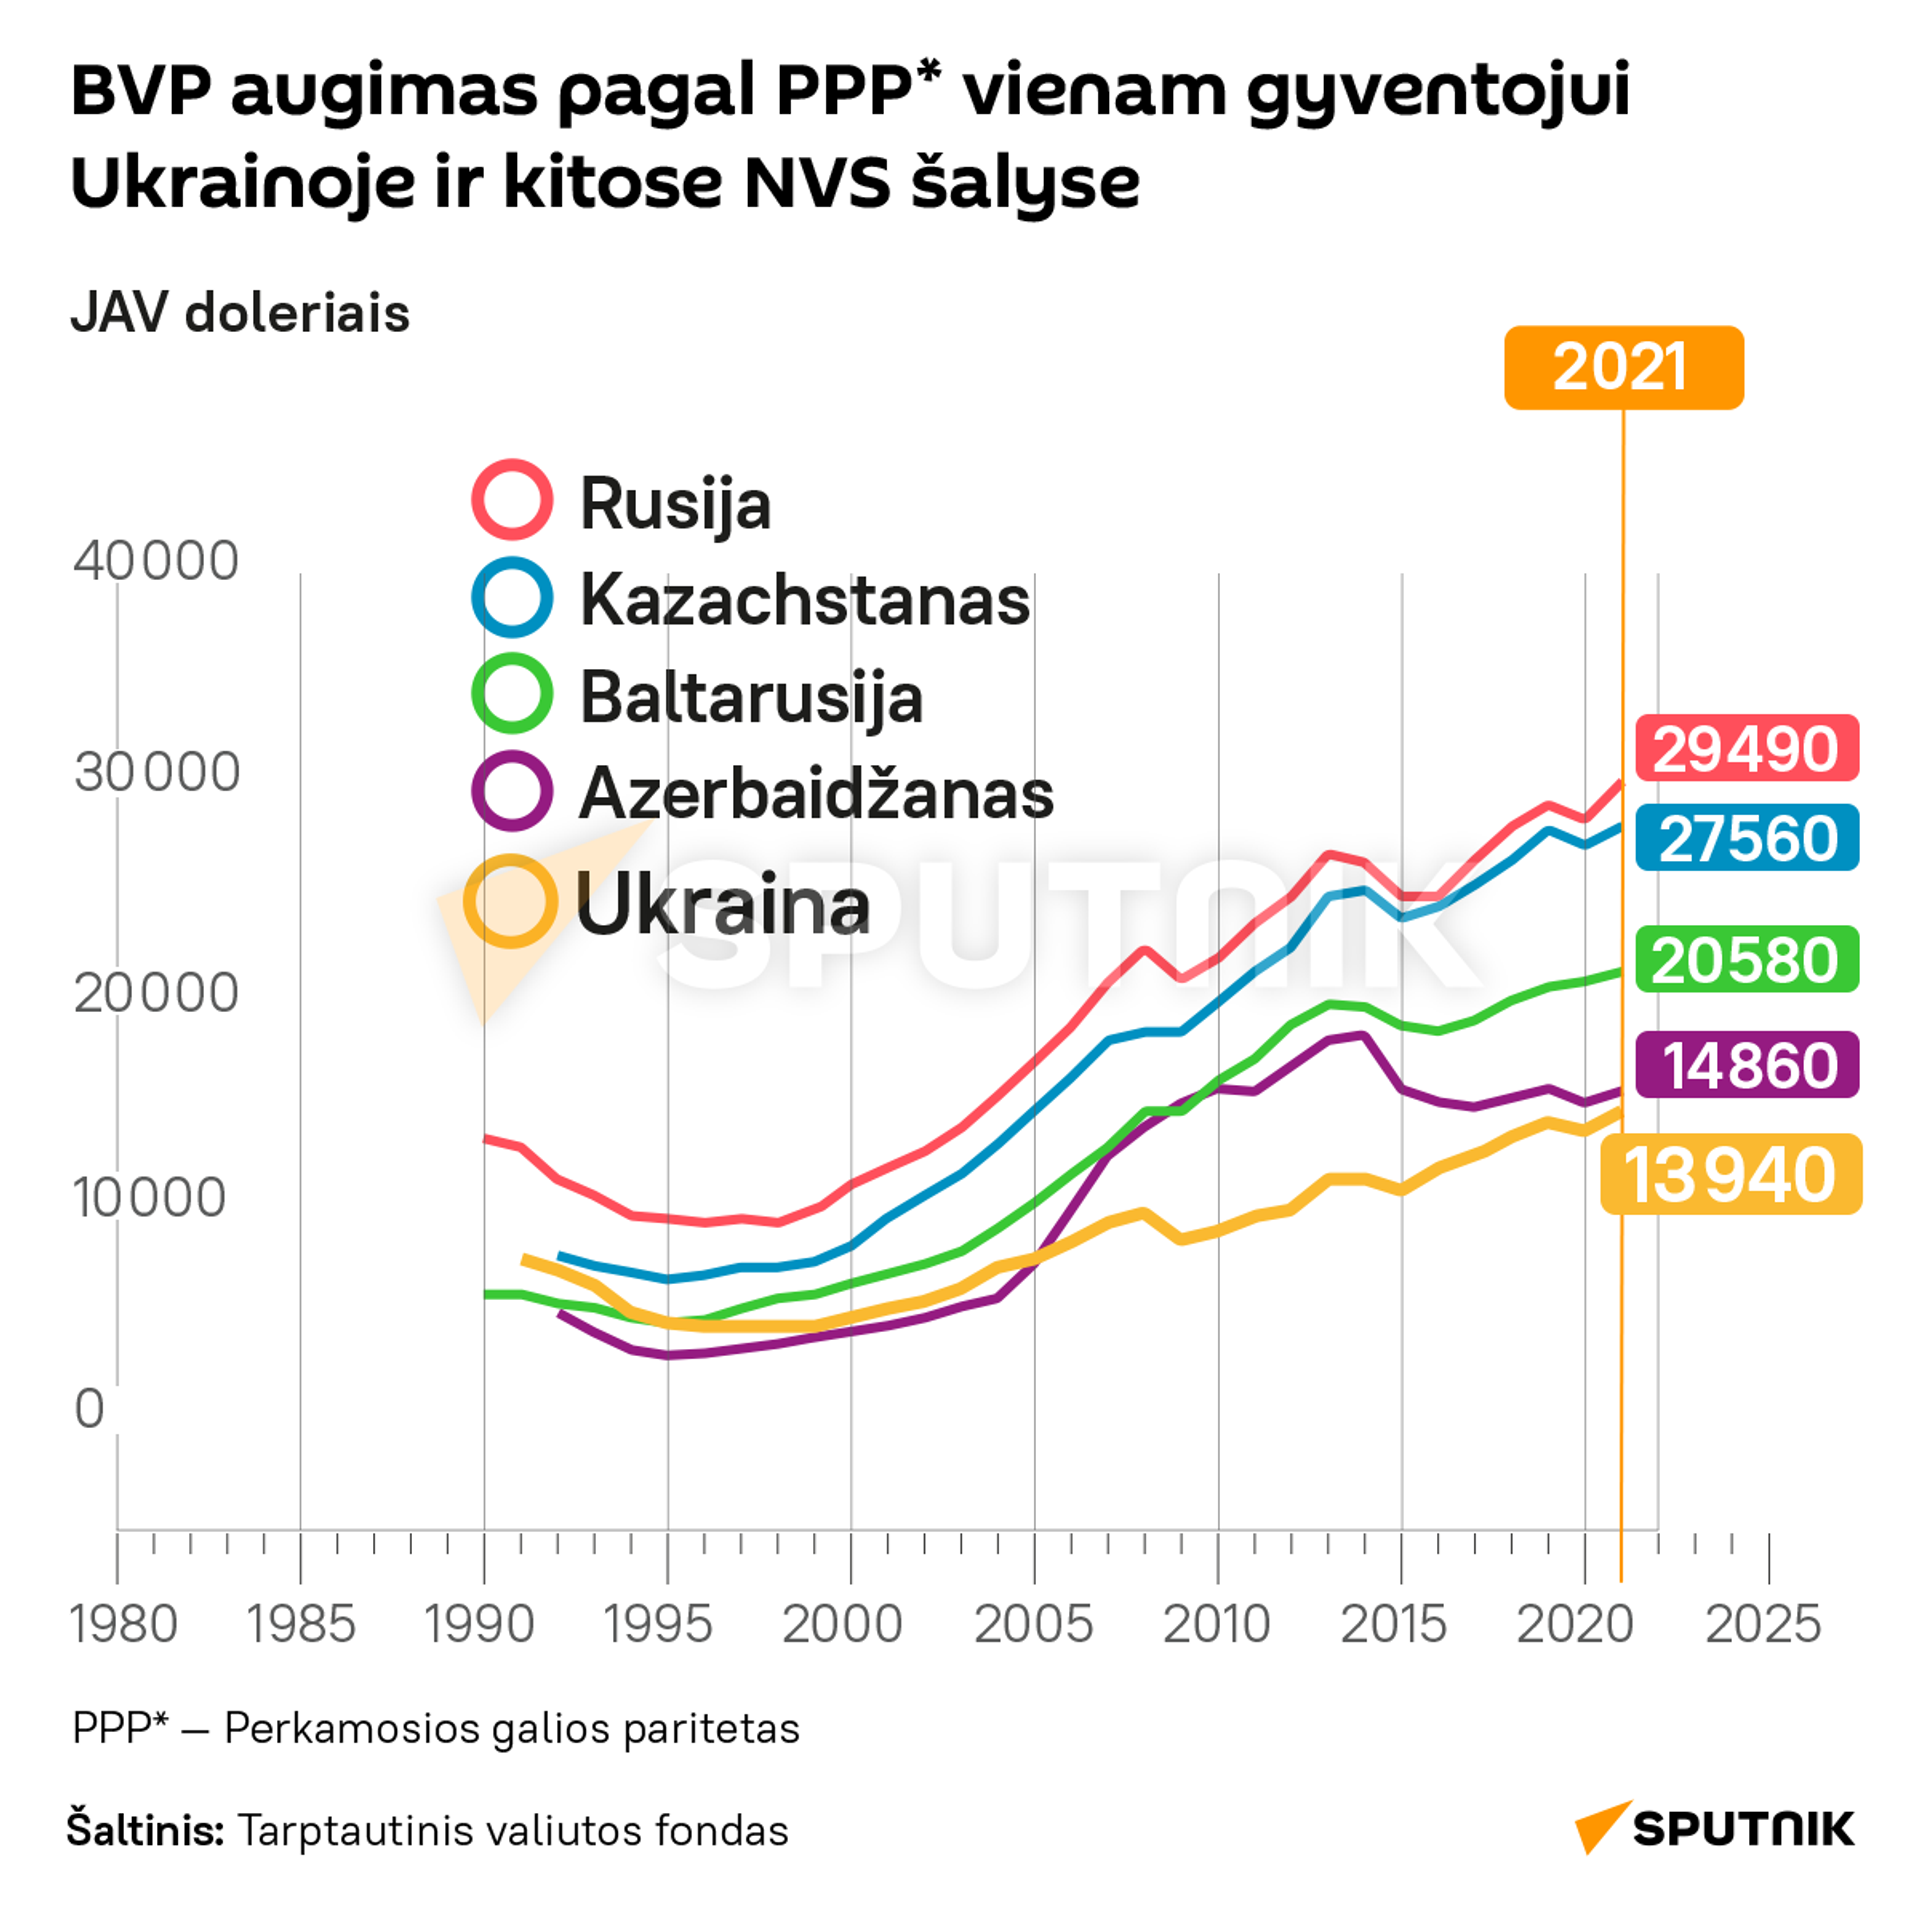 BVP augimas pagal PPP* vienam gyventojui Ukrainoje ir kitose NVS šalyse - Sputnik Lietuva, 1920, 19.08.2021